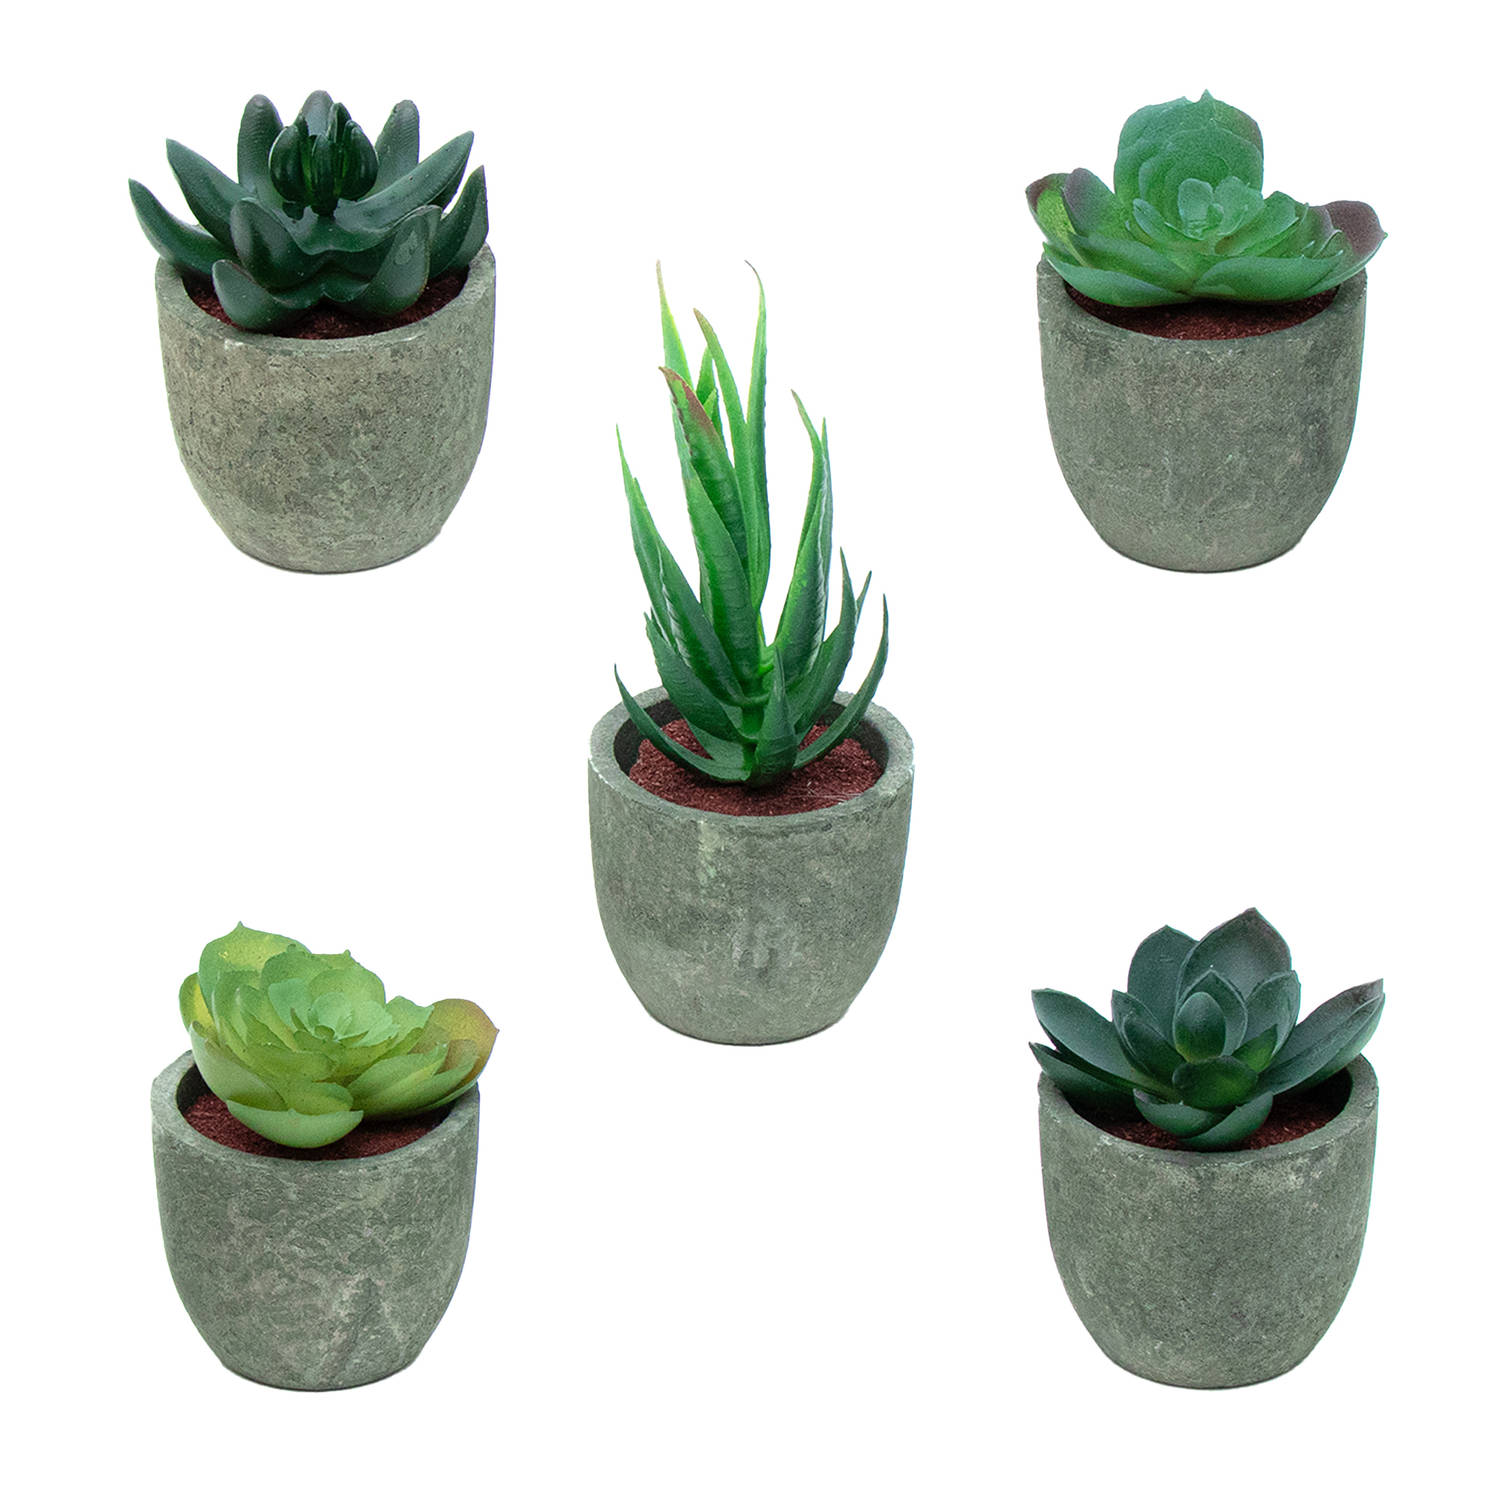 Intirilife kunstplant 5 stuks kleine kunstplanten in grijze pot - diameter 6,5 cm - hoogte 7 cm en 15 cm - potplanten kunstplanten decoratie voor woonkamer keuken slaapkamer